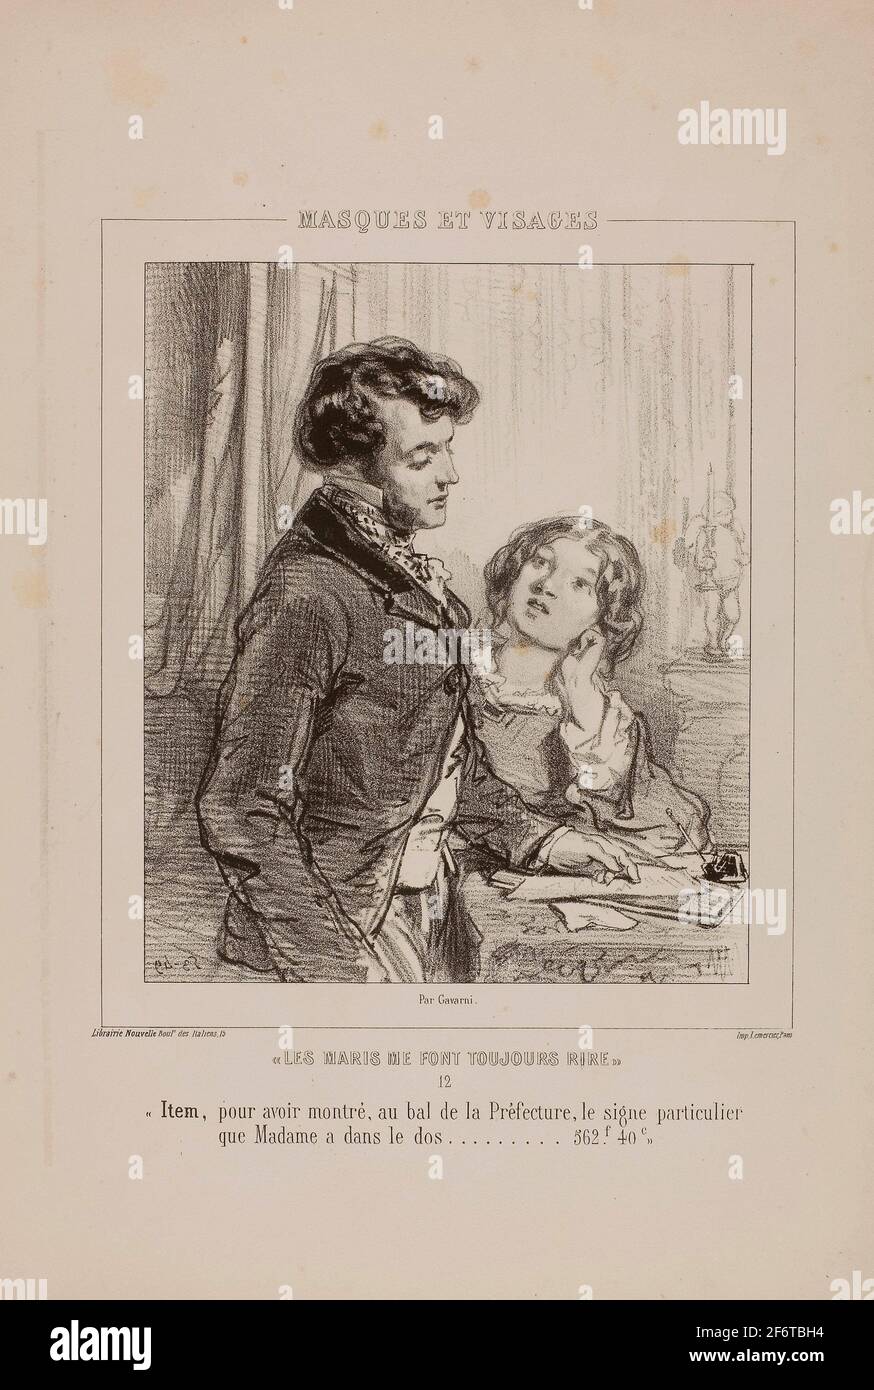 Author: Paul Gavarni. Les maris me font toujours rire: Item, pour avoir montr, au bal de la Prfecture. - 1853 - Paul Gavarni French, 1804-1866. Stock Photo